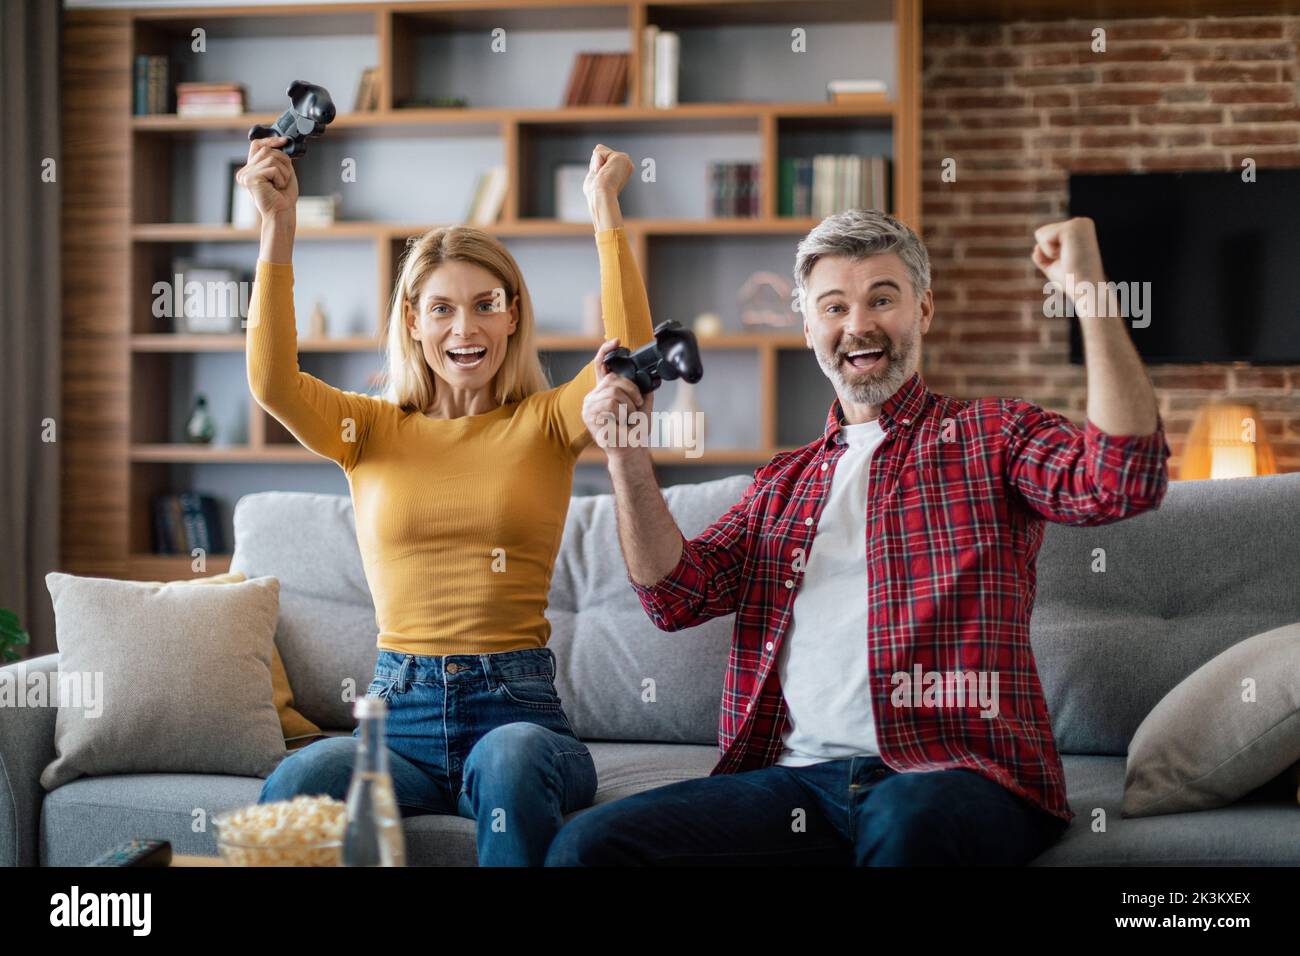 Zufriedene reife europäische Familie mit Joysticks genießen Online-Spiel auf Computer machen Siegesgeste Stockfoto